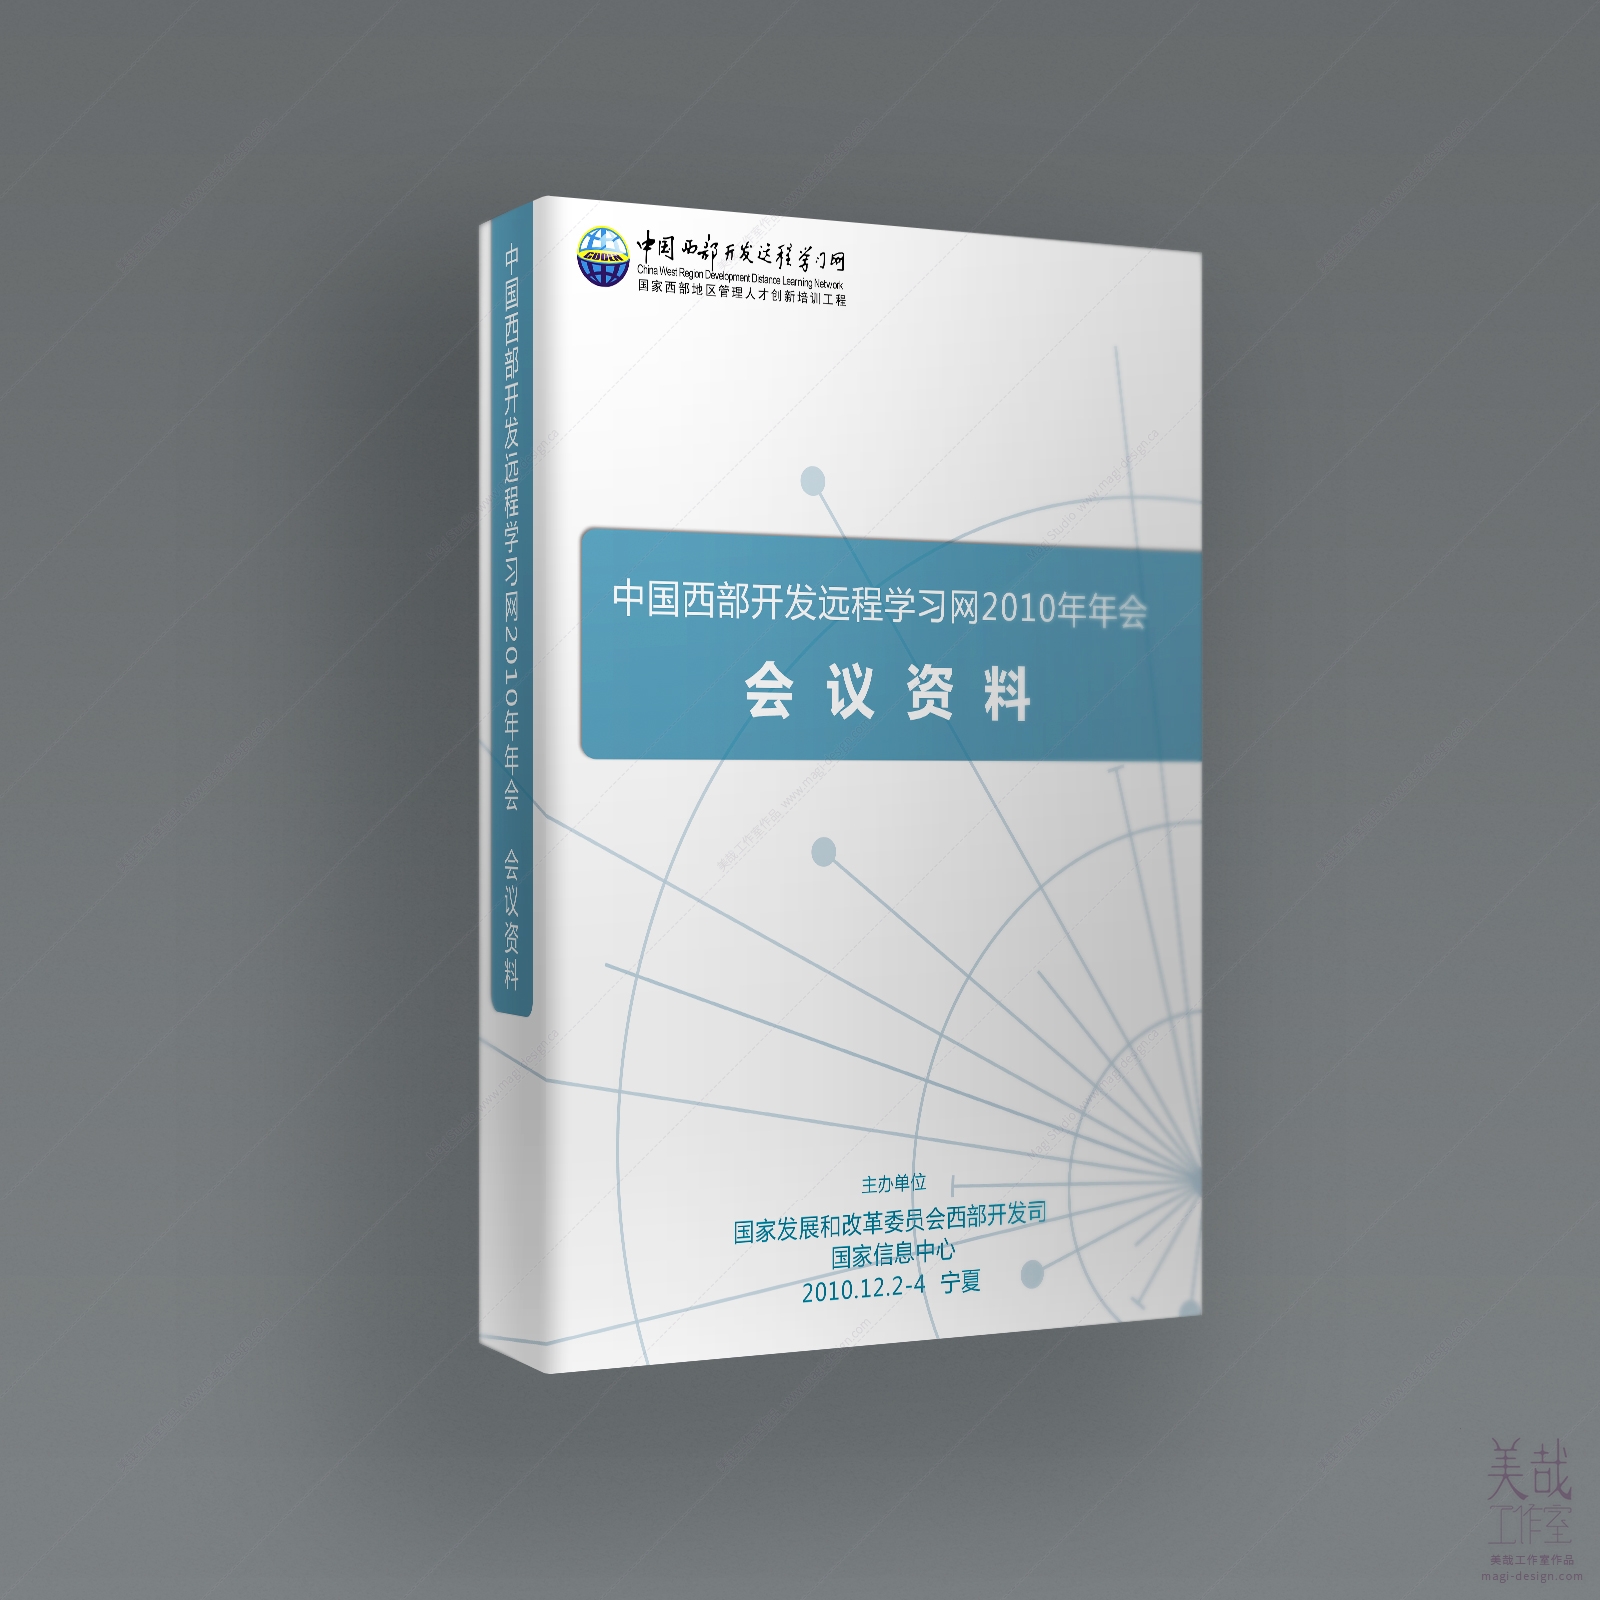 中国西部开发远程学习网会议资料的封面设计展示